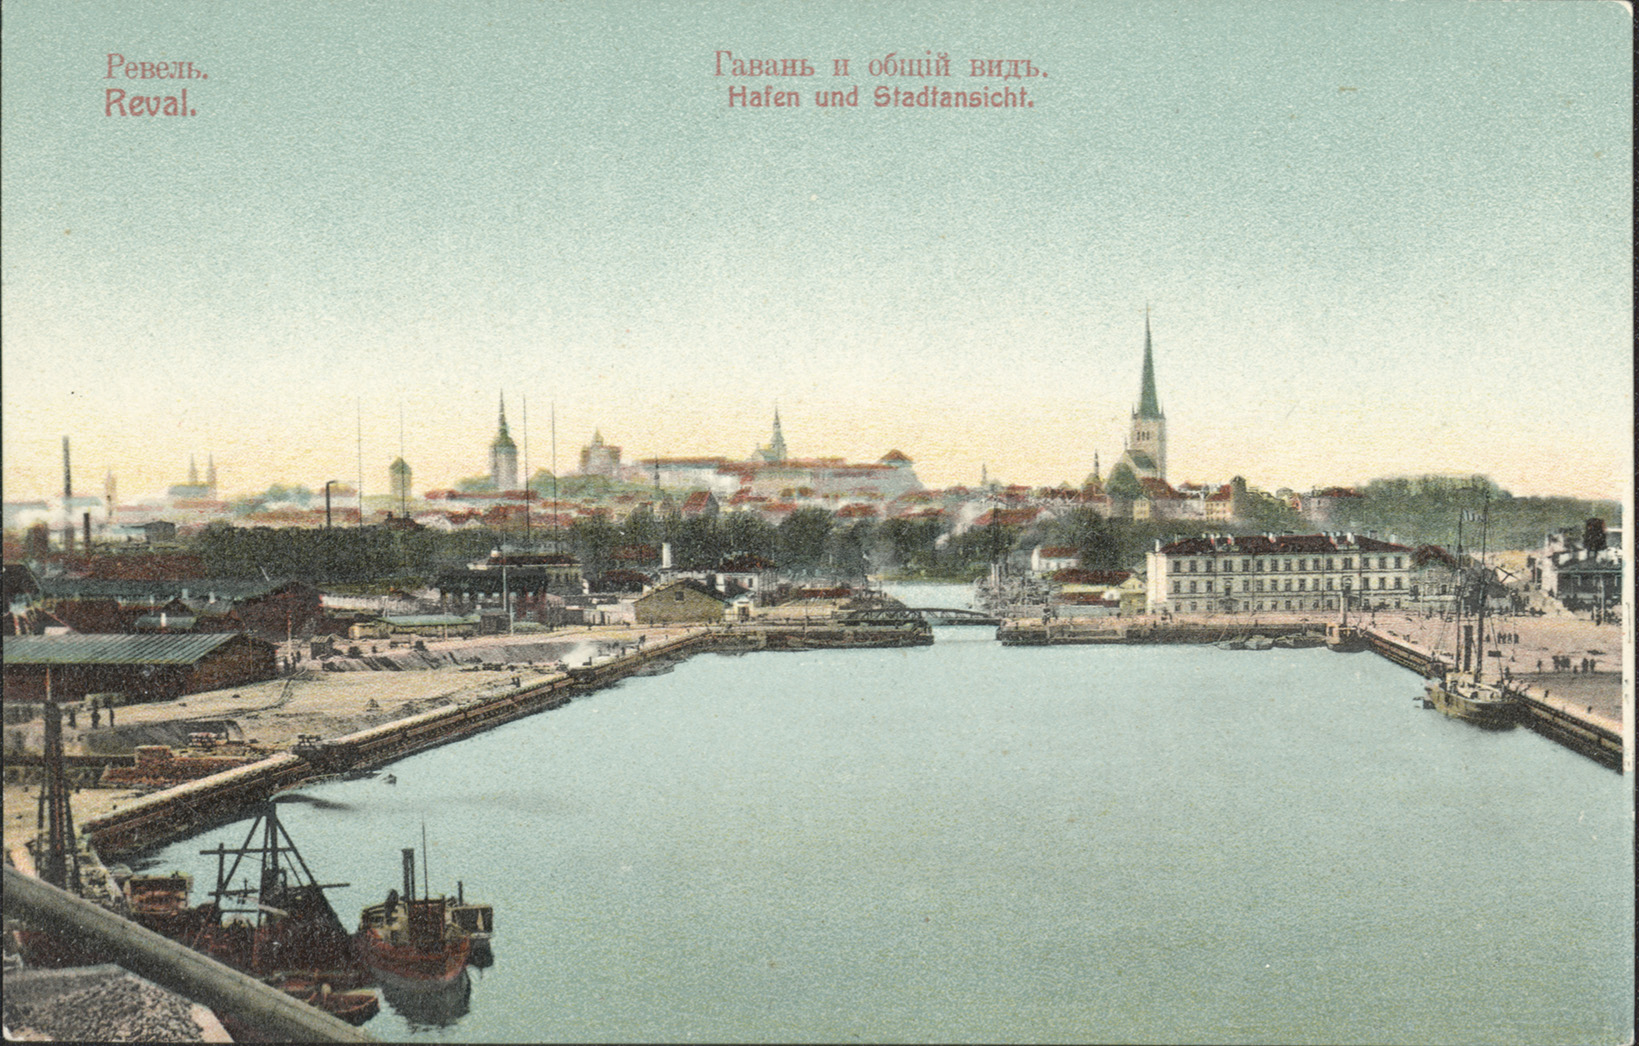 TLA 1465 1 1962 Hafen und Stadtansicht m. Lewinthal postcard - Hafen und Stadtansicht m. Lewinthal postcard